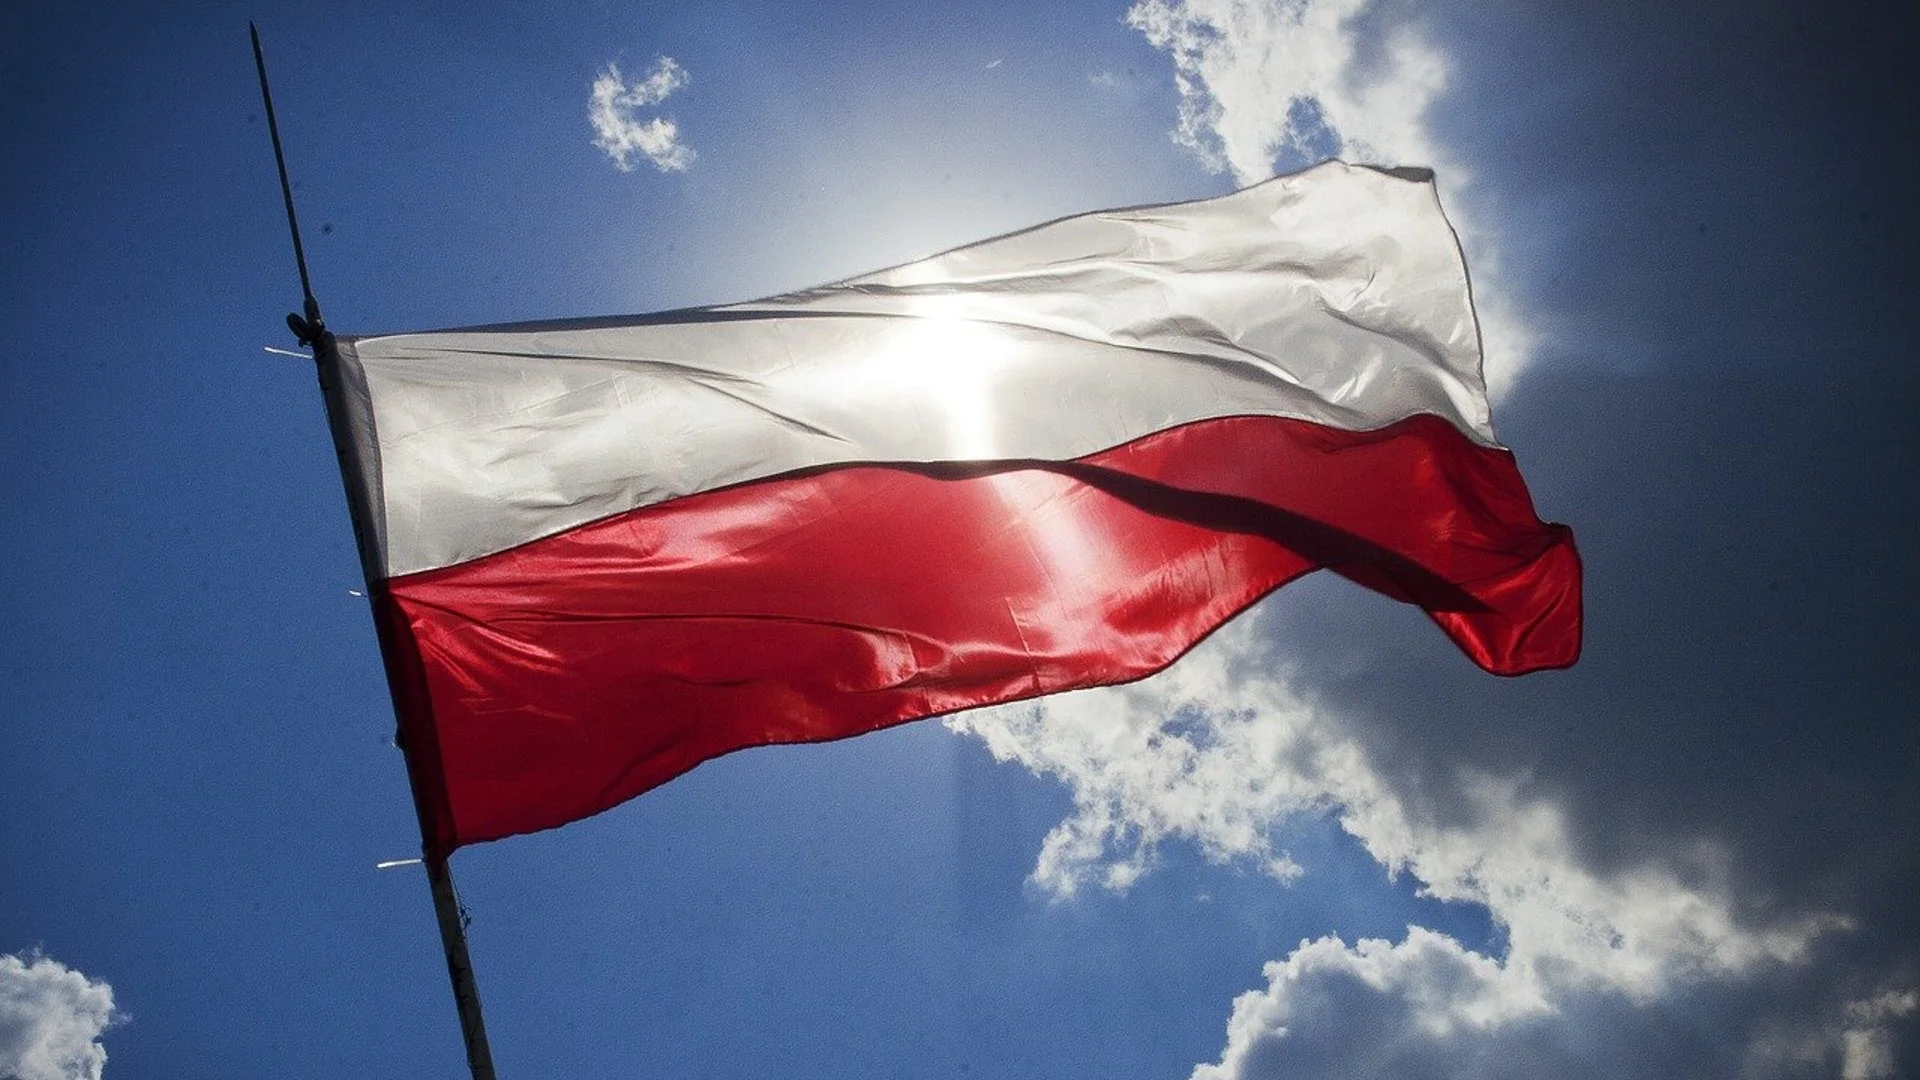 Сблъсък между президента и новия кабинет в Полша